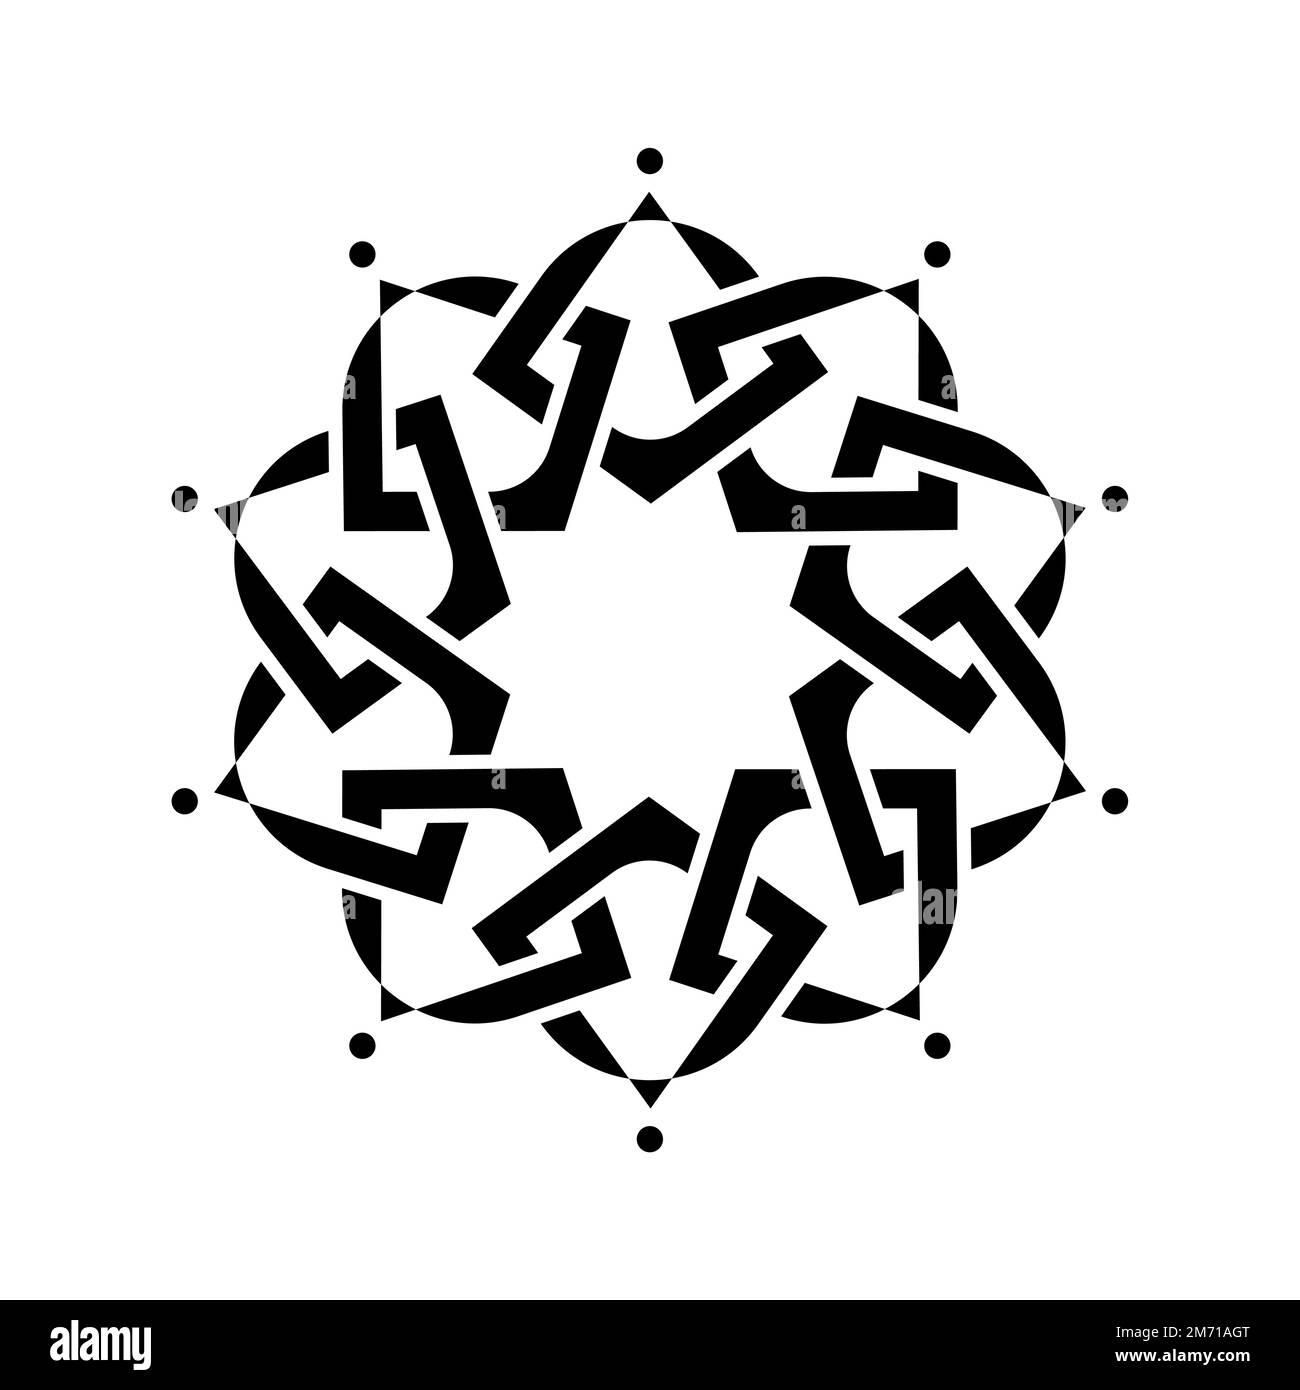 Geometrisches Emblem-Template-Design mit überlappenden Elementen. Islamisches Motiv. Keltischer Knoten. Geometrisches Muster Mandala im arabischen Stil, schwarzes Logo isoliert Stock Vektor